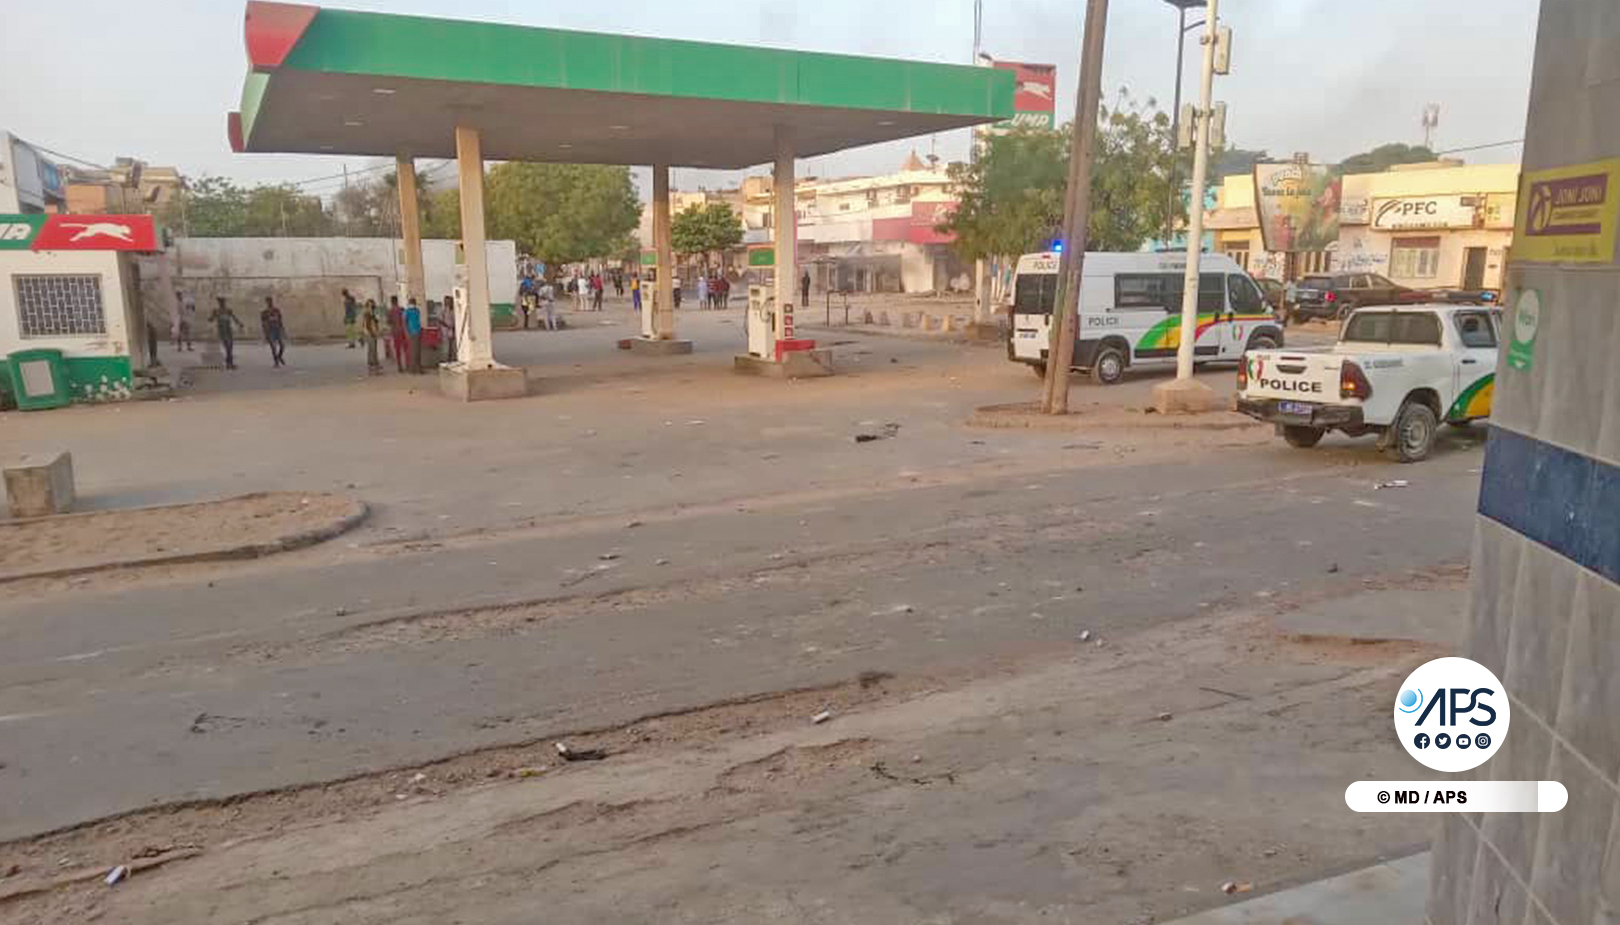 SENEGAL-POLITIQUE-JUSTICE-VIOLENCES / Des manifestants pillent de nombreux services publics à Pikine